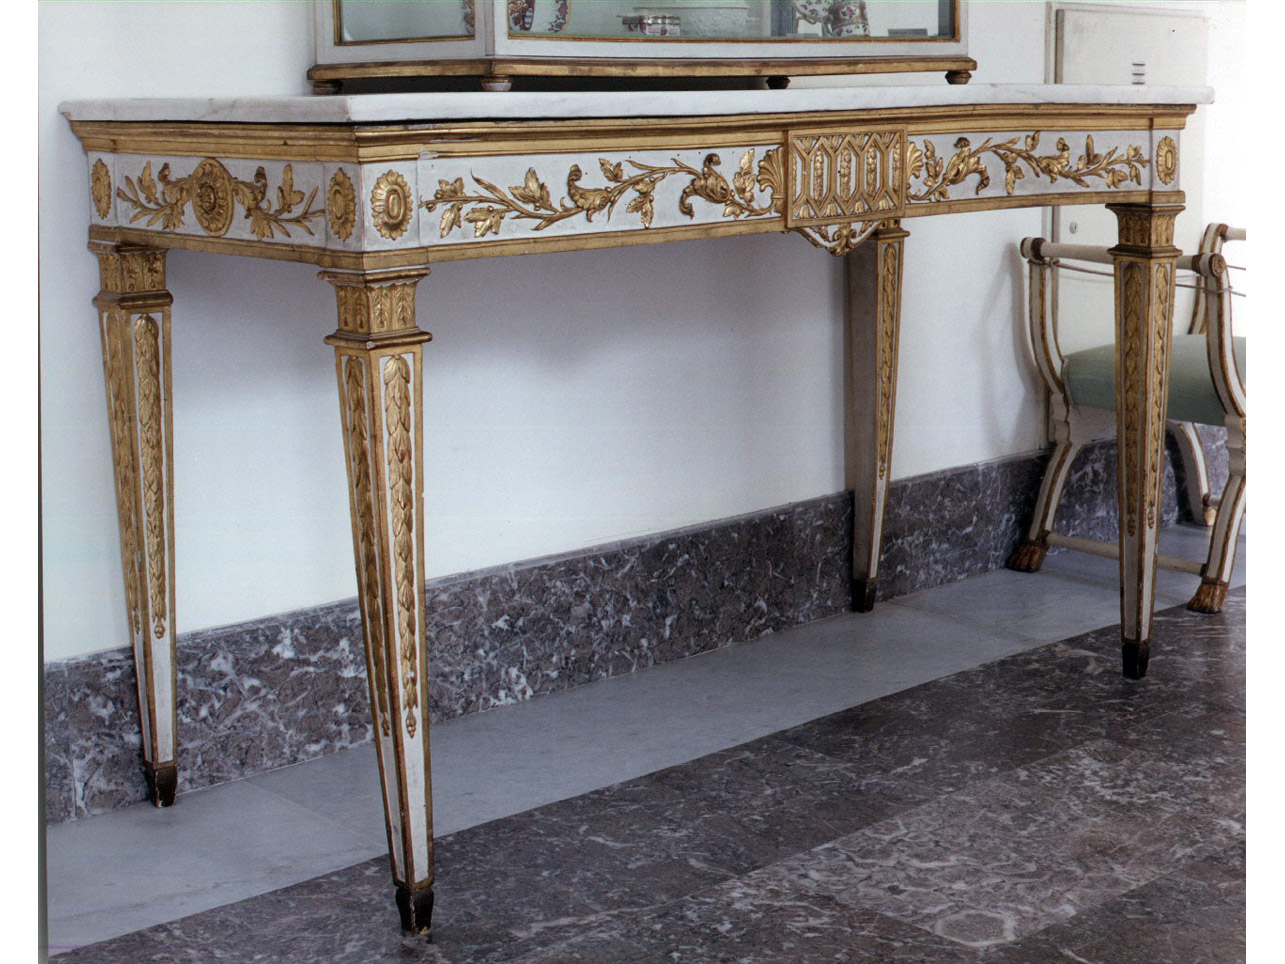 motivi decorativi floreali (tavolo da muro, serie) - manifattura napoletana (prima metà sec. XIX)